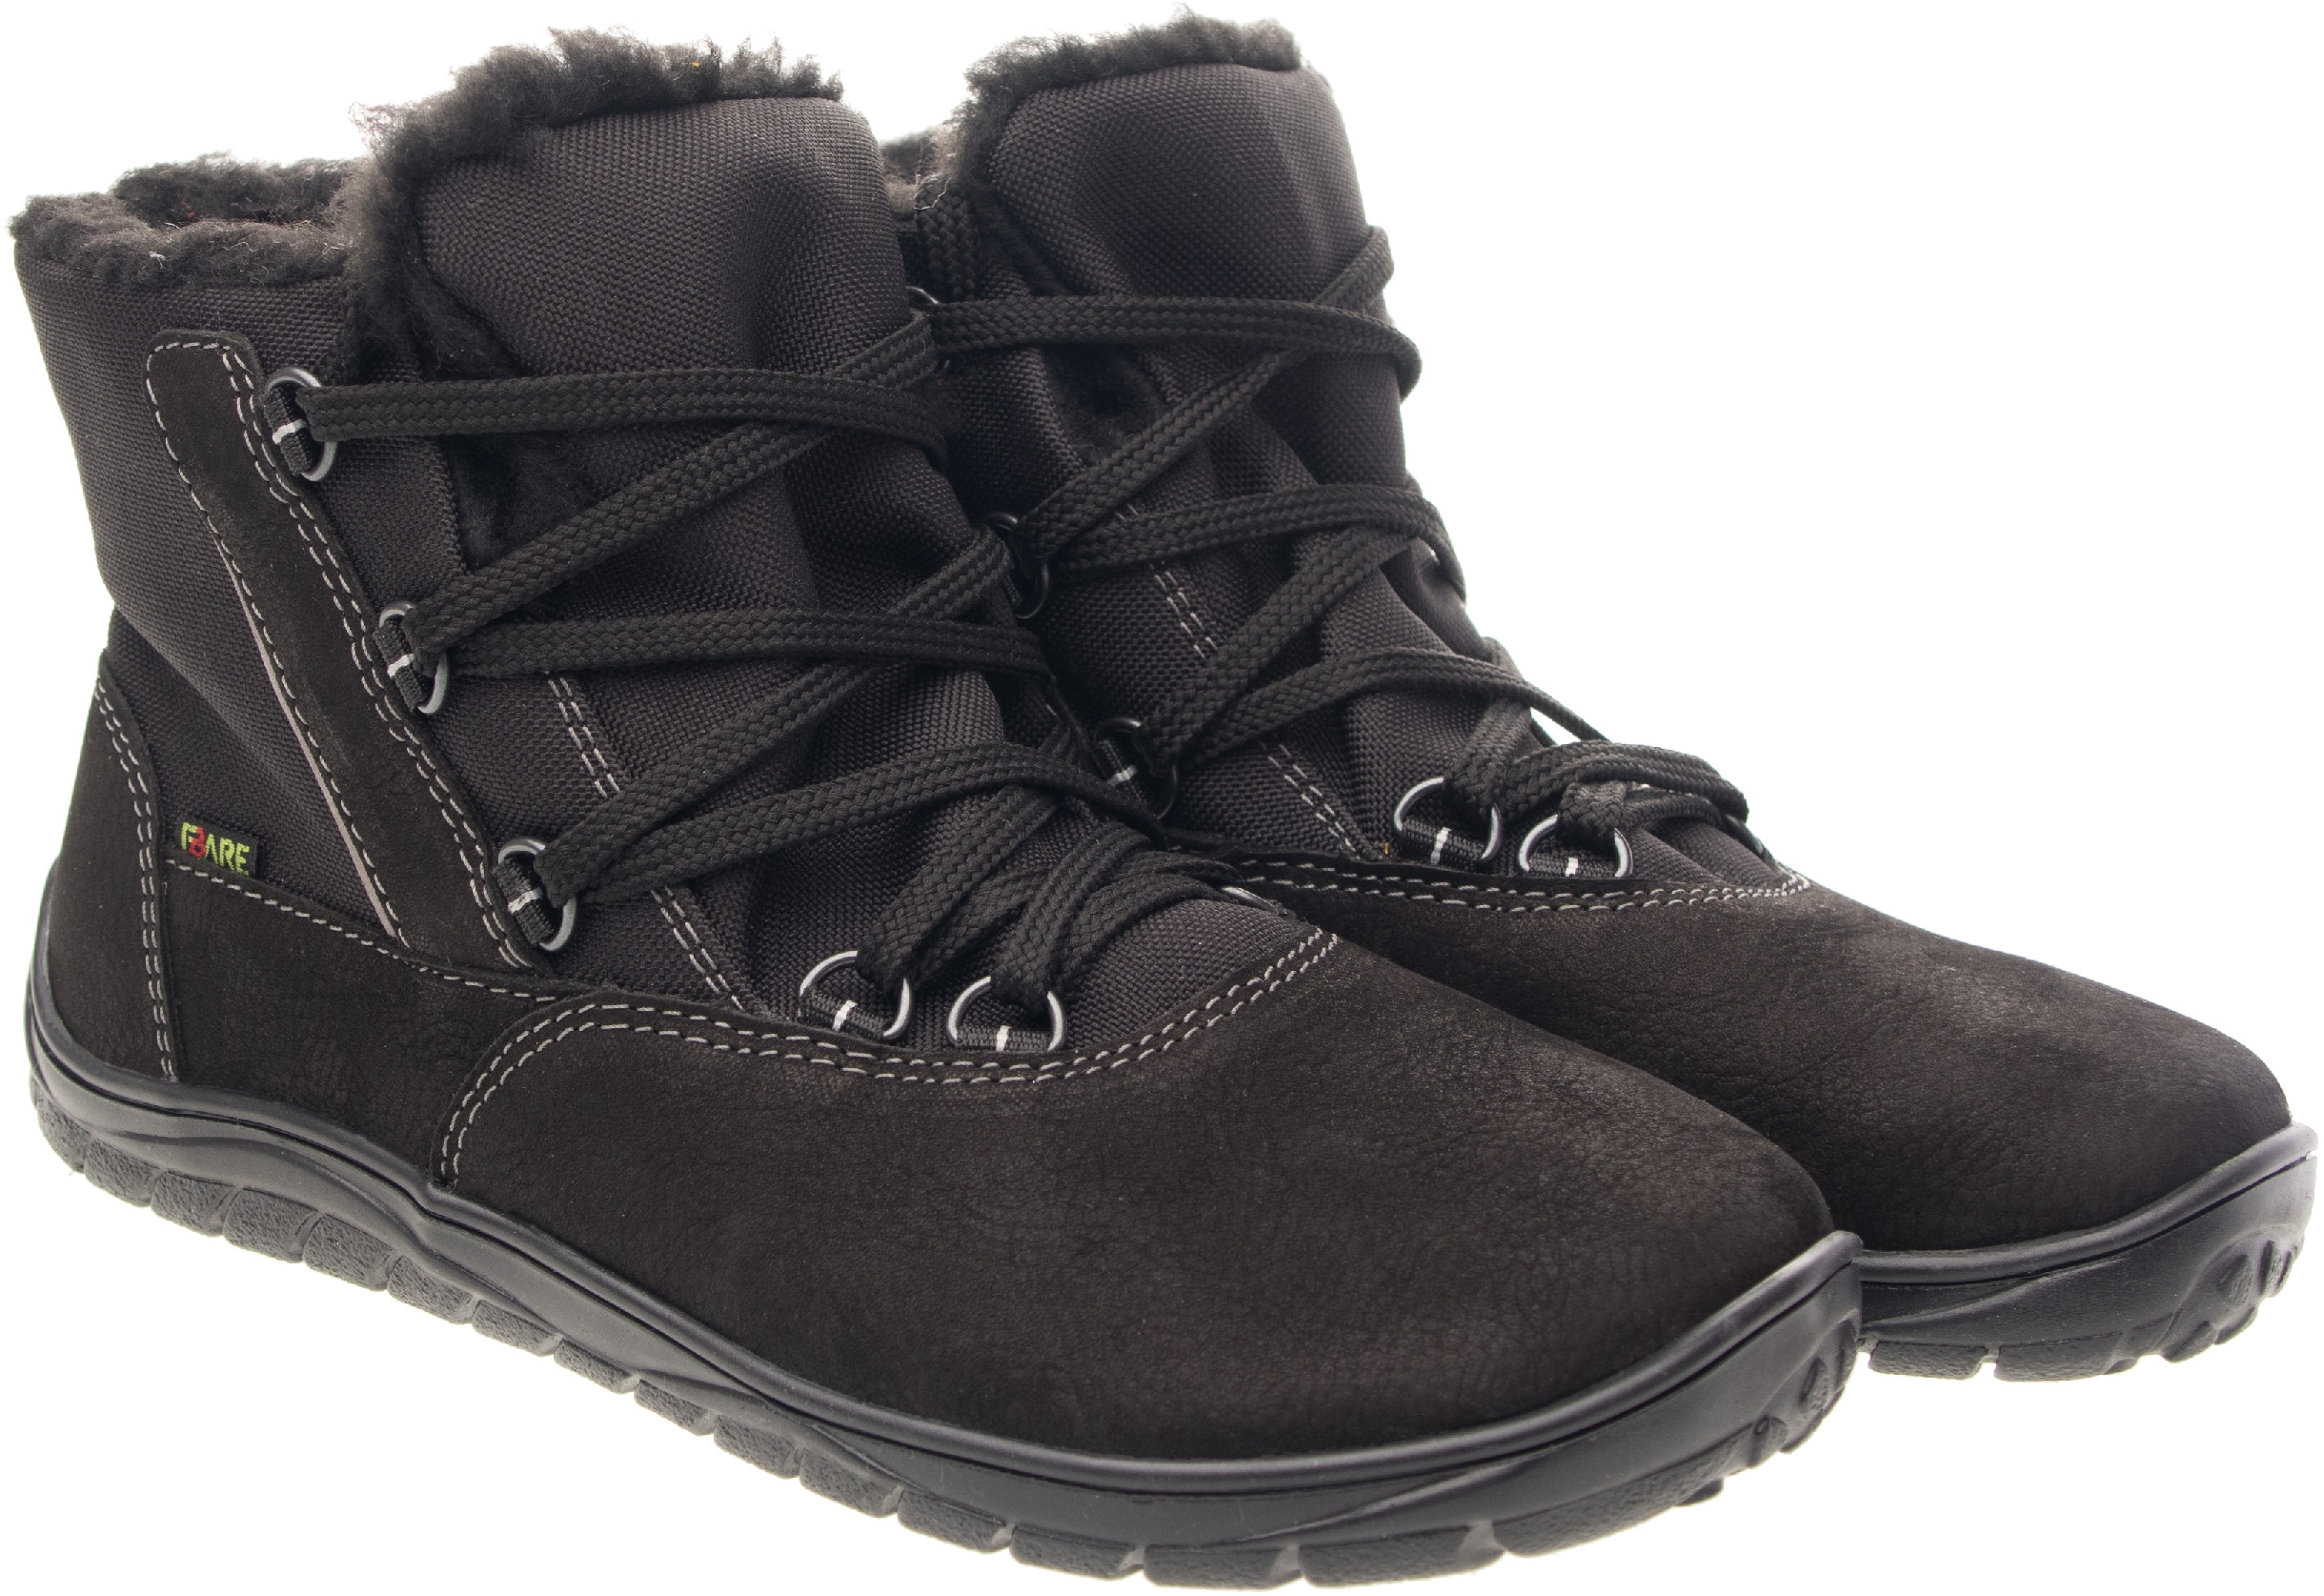 Fare Bare unisex zimní nepromokavé boty B5643112 Velikost obuvi: 36